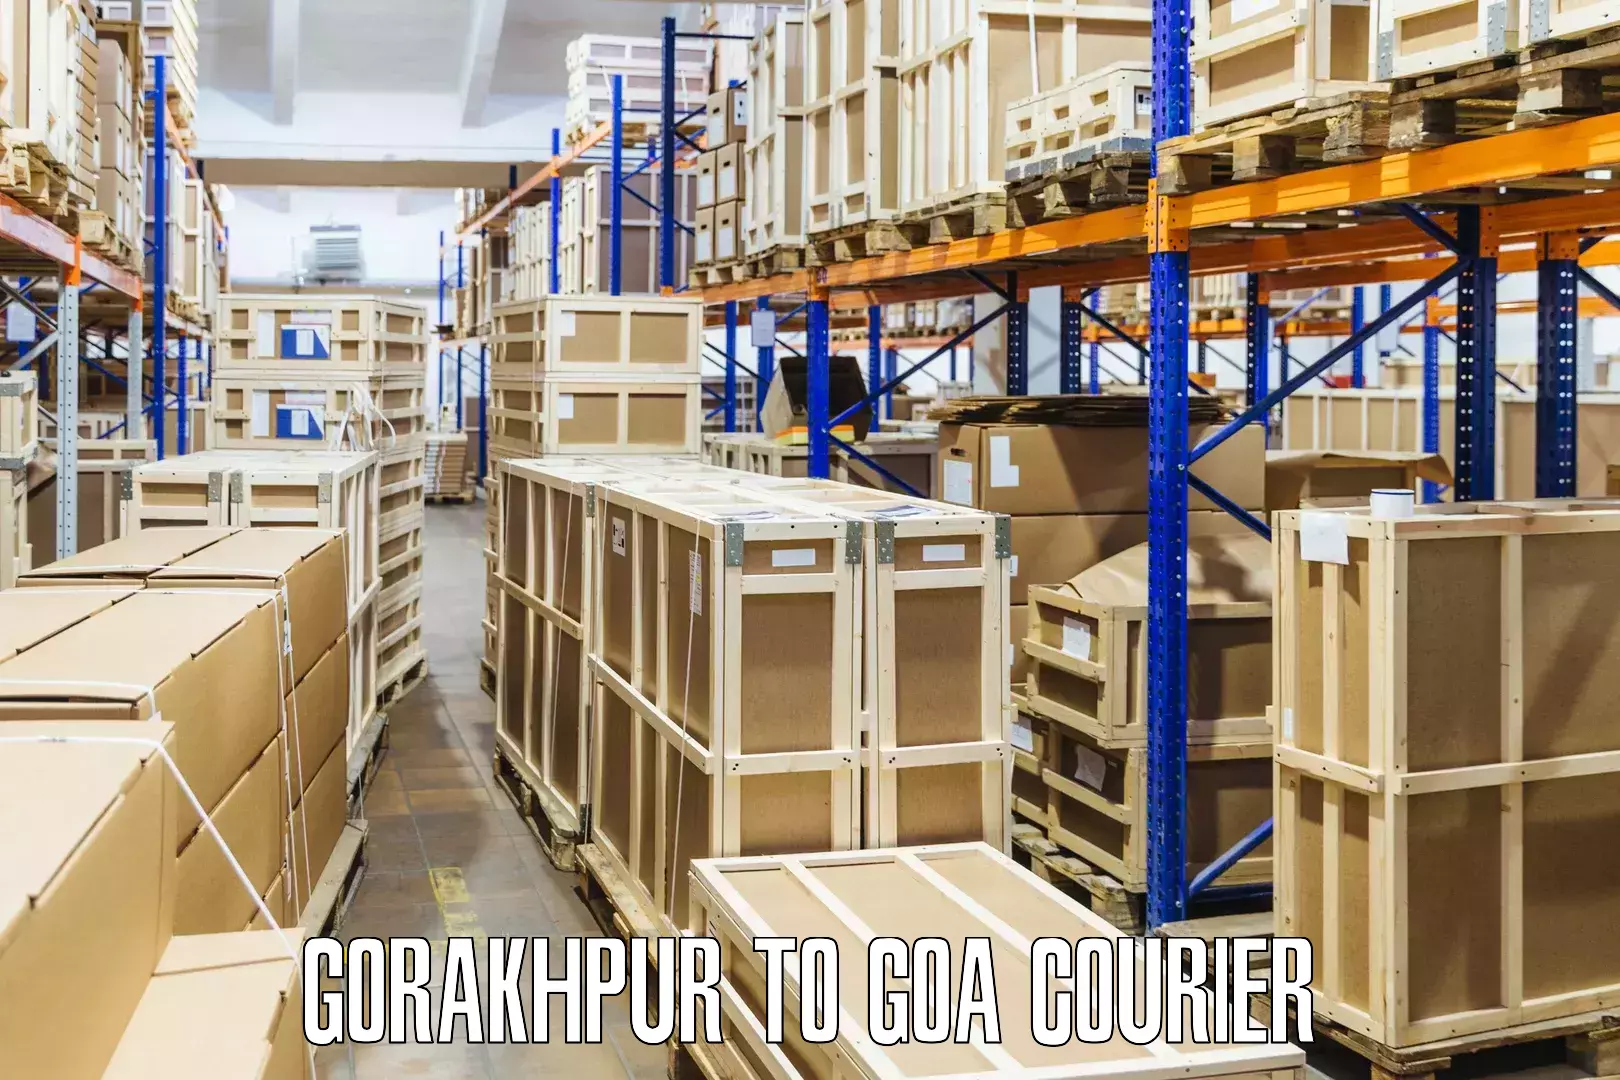 Nationwide courier service Gorakhpur to Mormugao Port